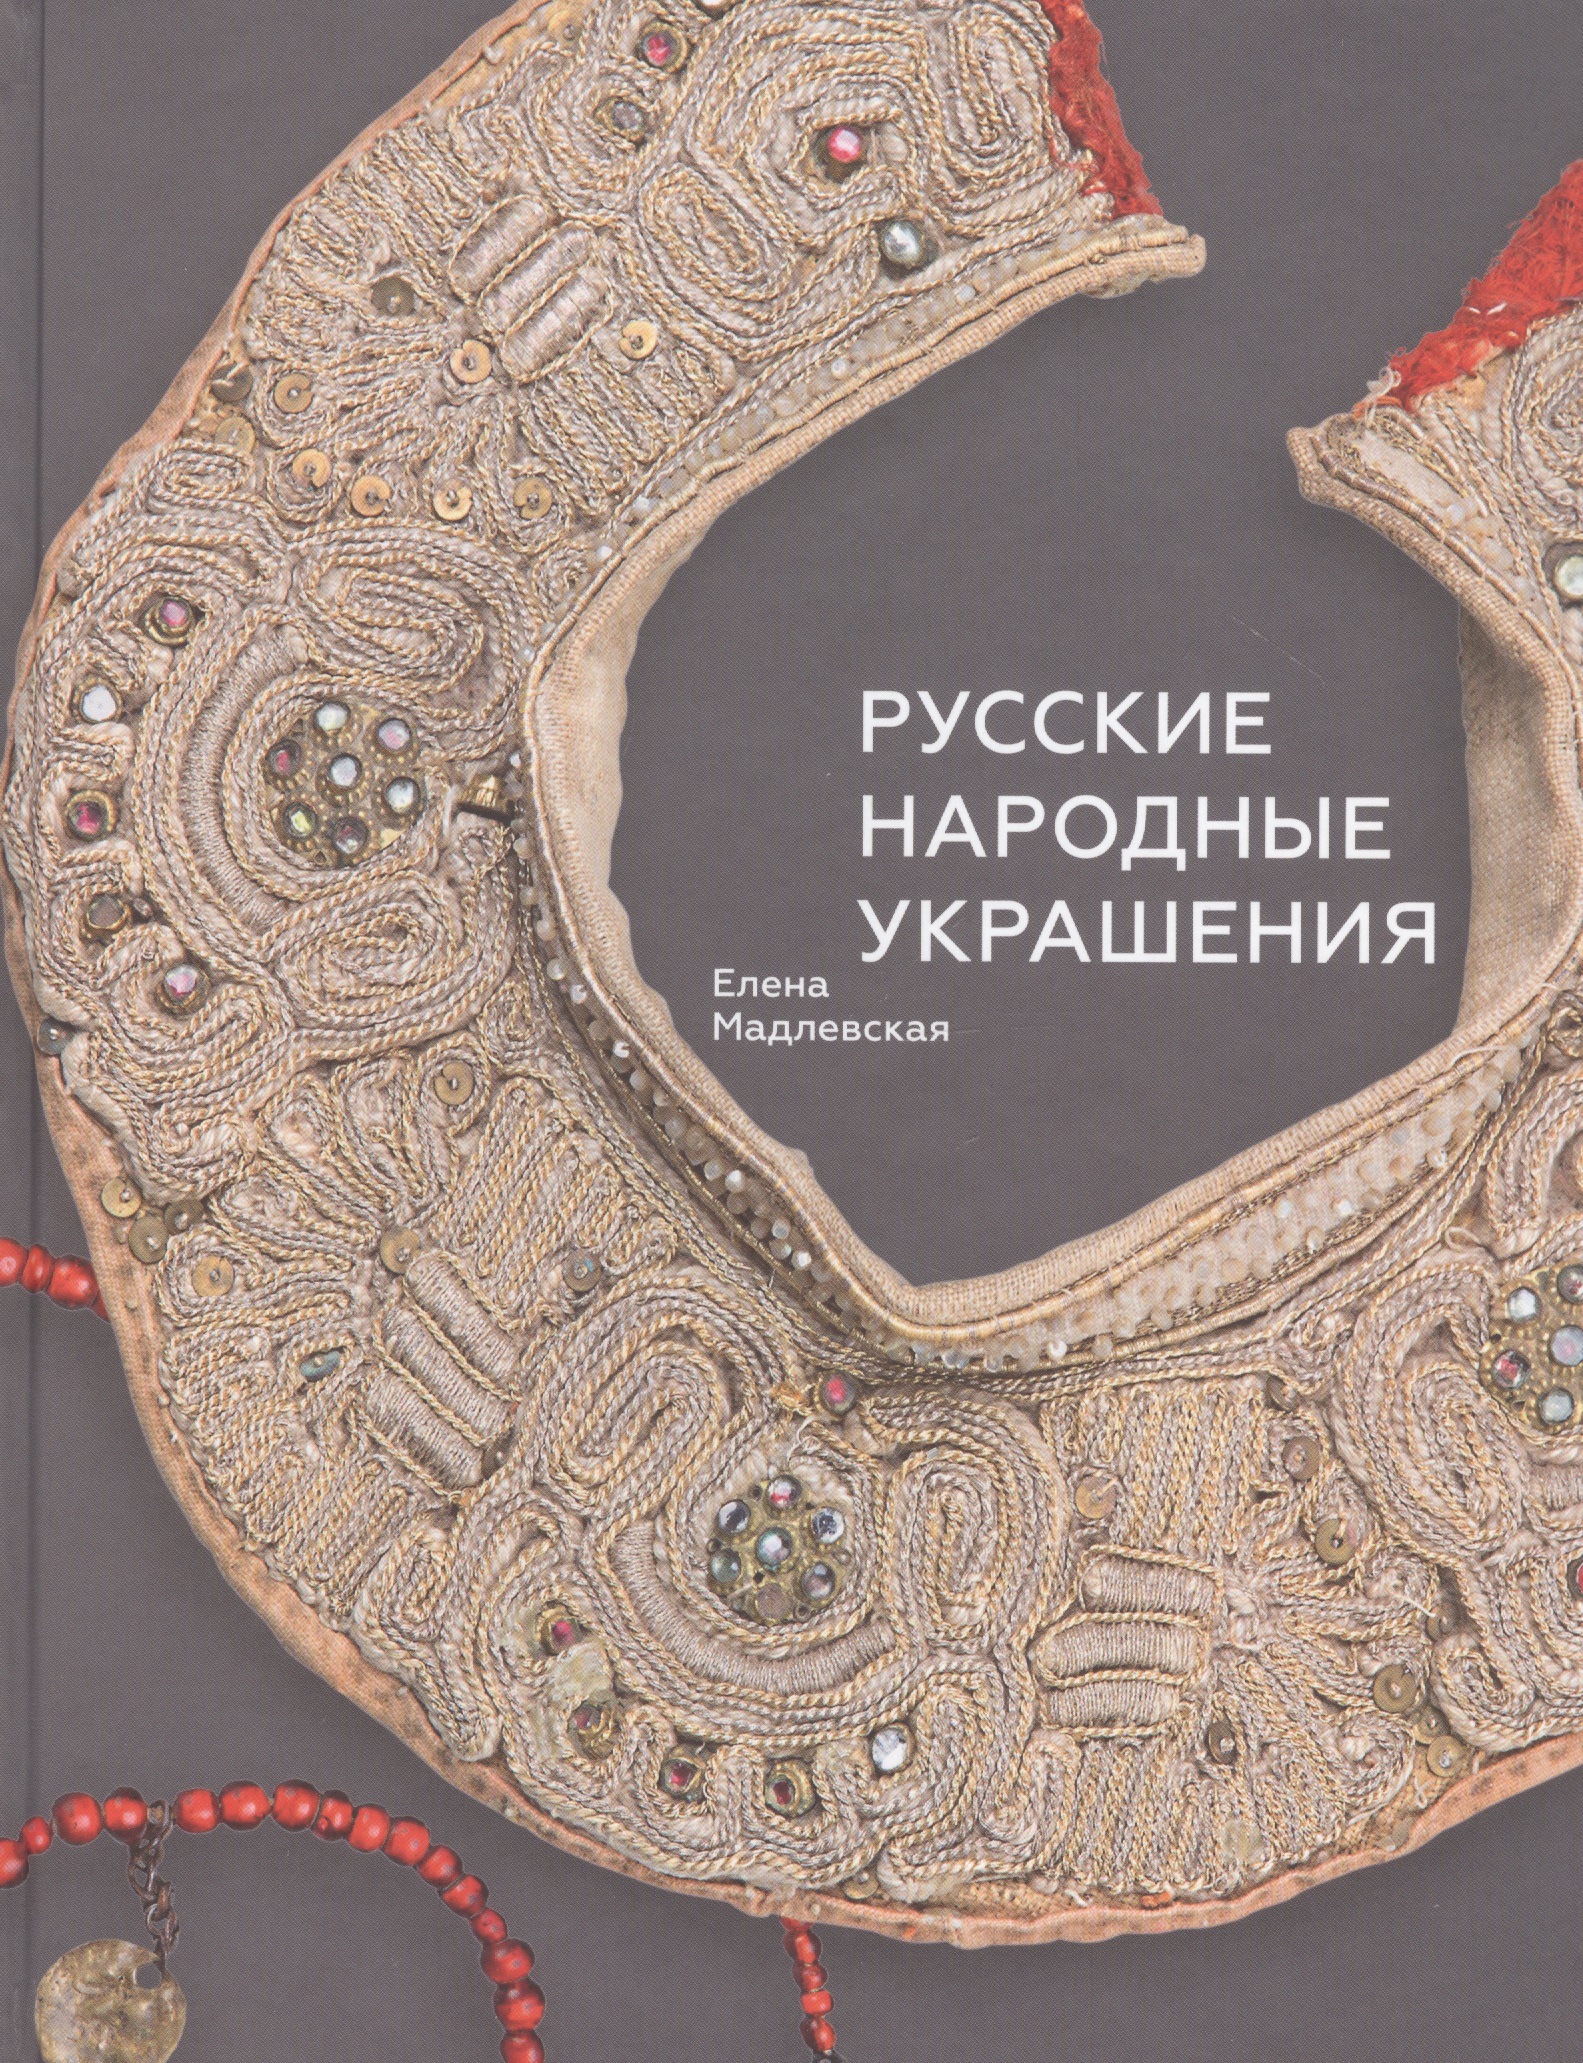 Книга ювелирные изделия. Книга Мадлевской русские народные украшения.